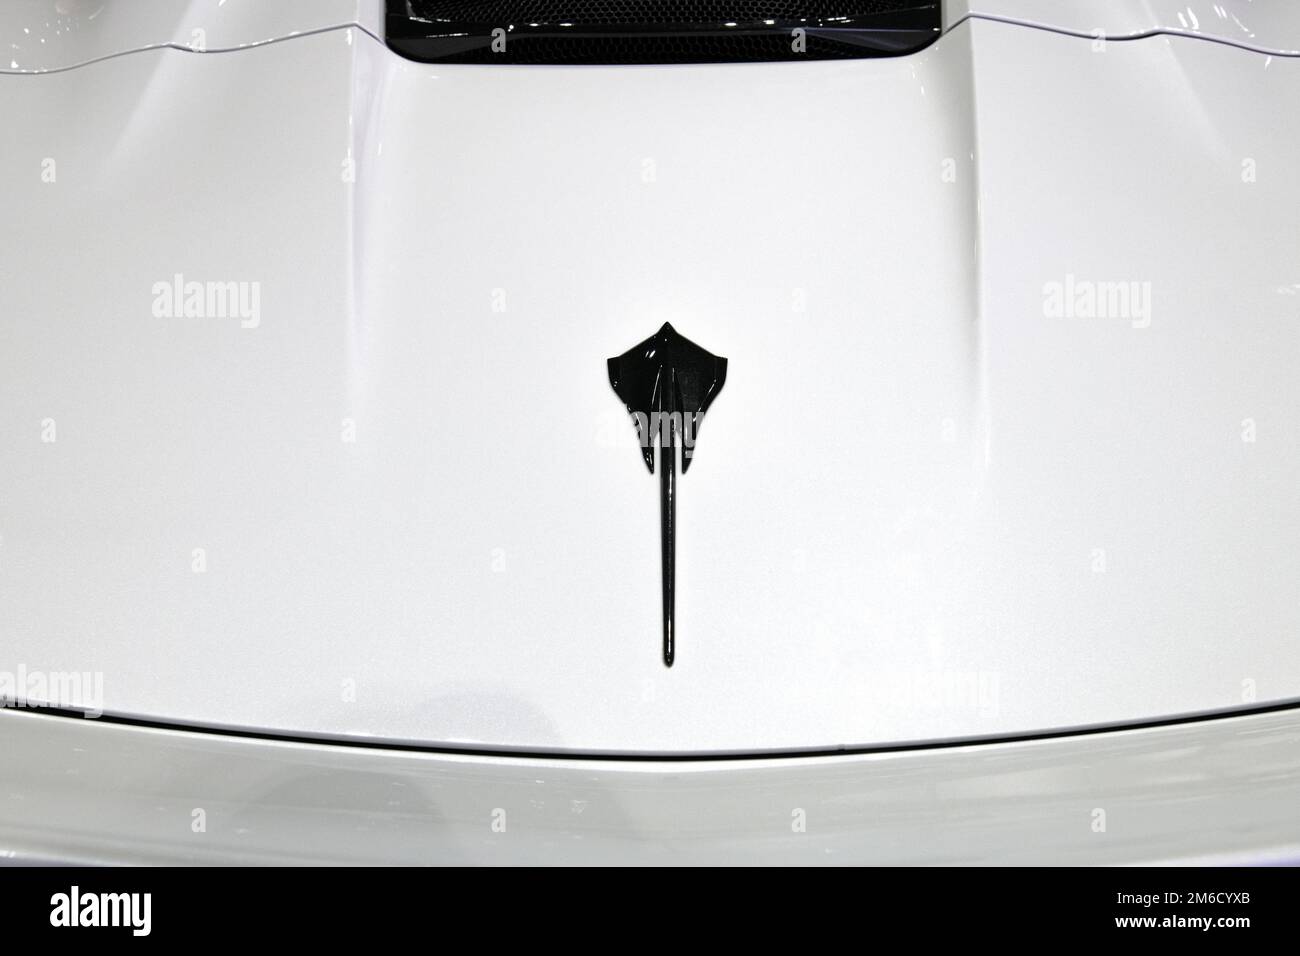 Corvette Stingray emblem. Stock Photo